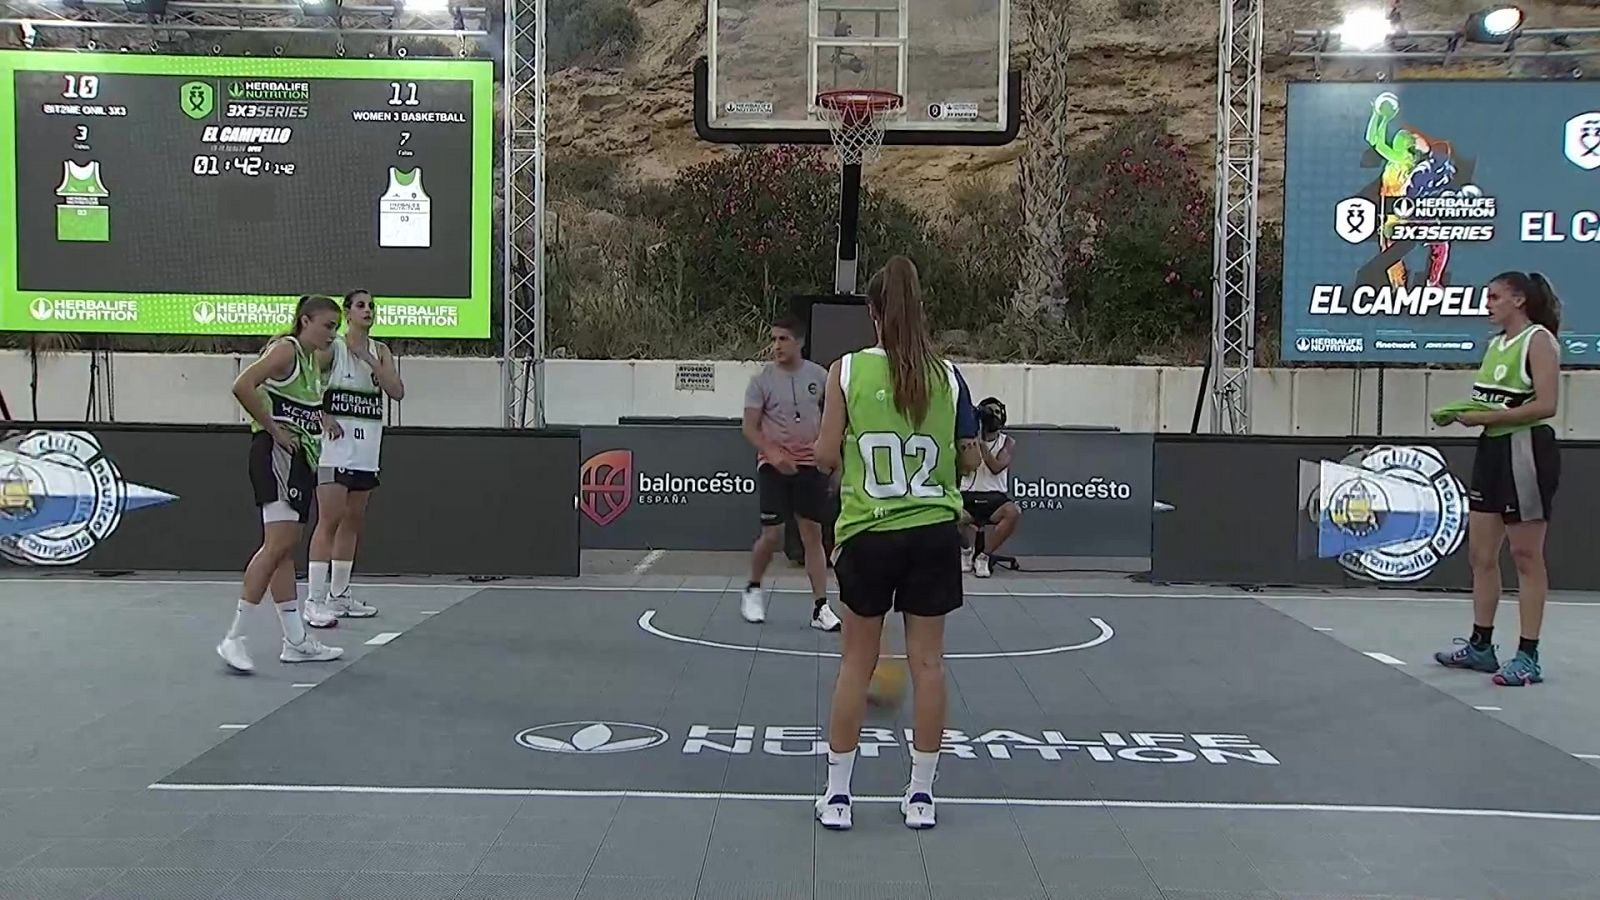 Baloncesto - 3x3 Herbalife series 3x3, desde El Campello - RTVE Play